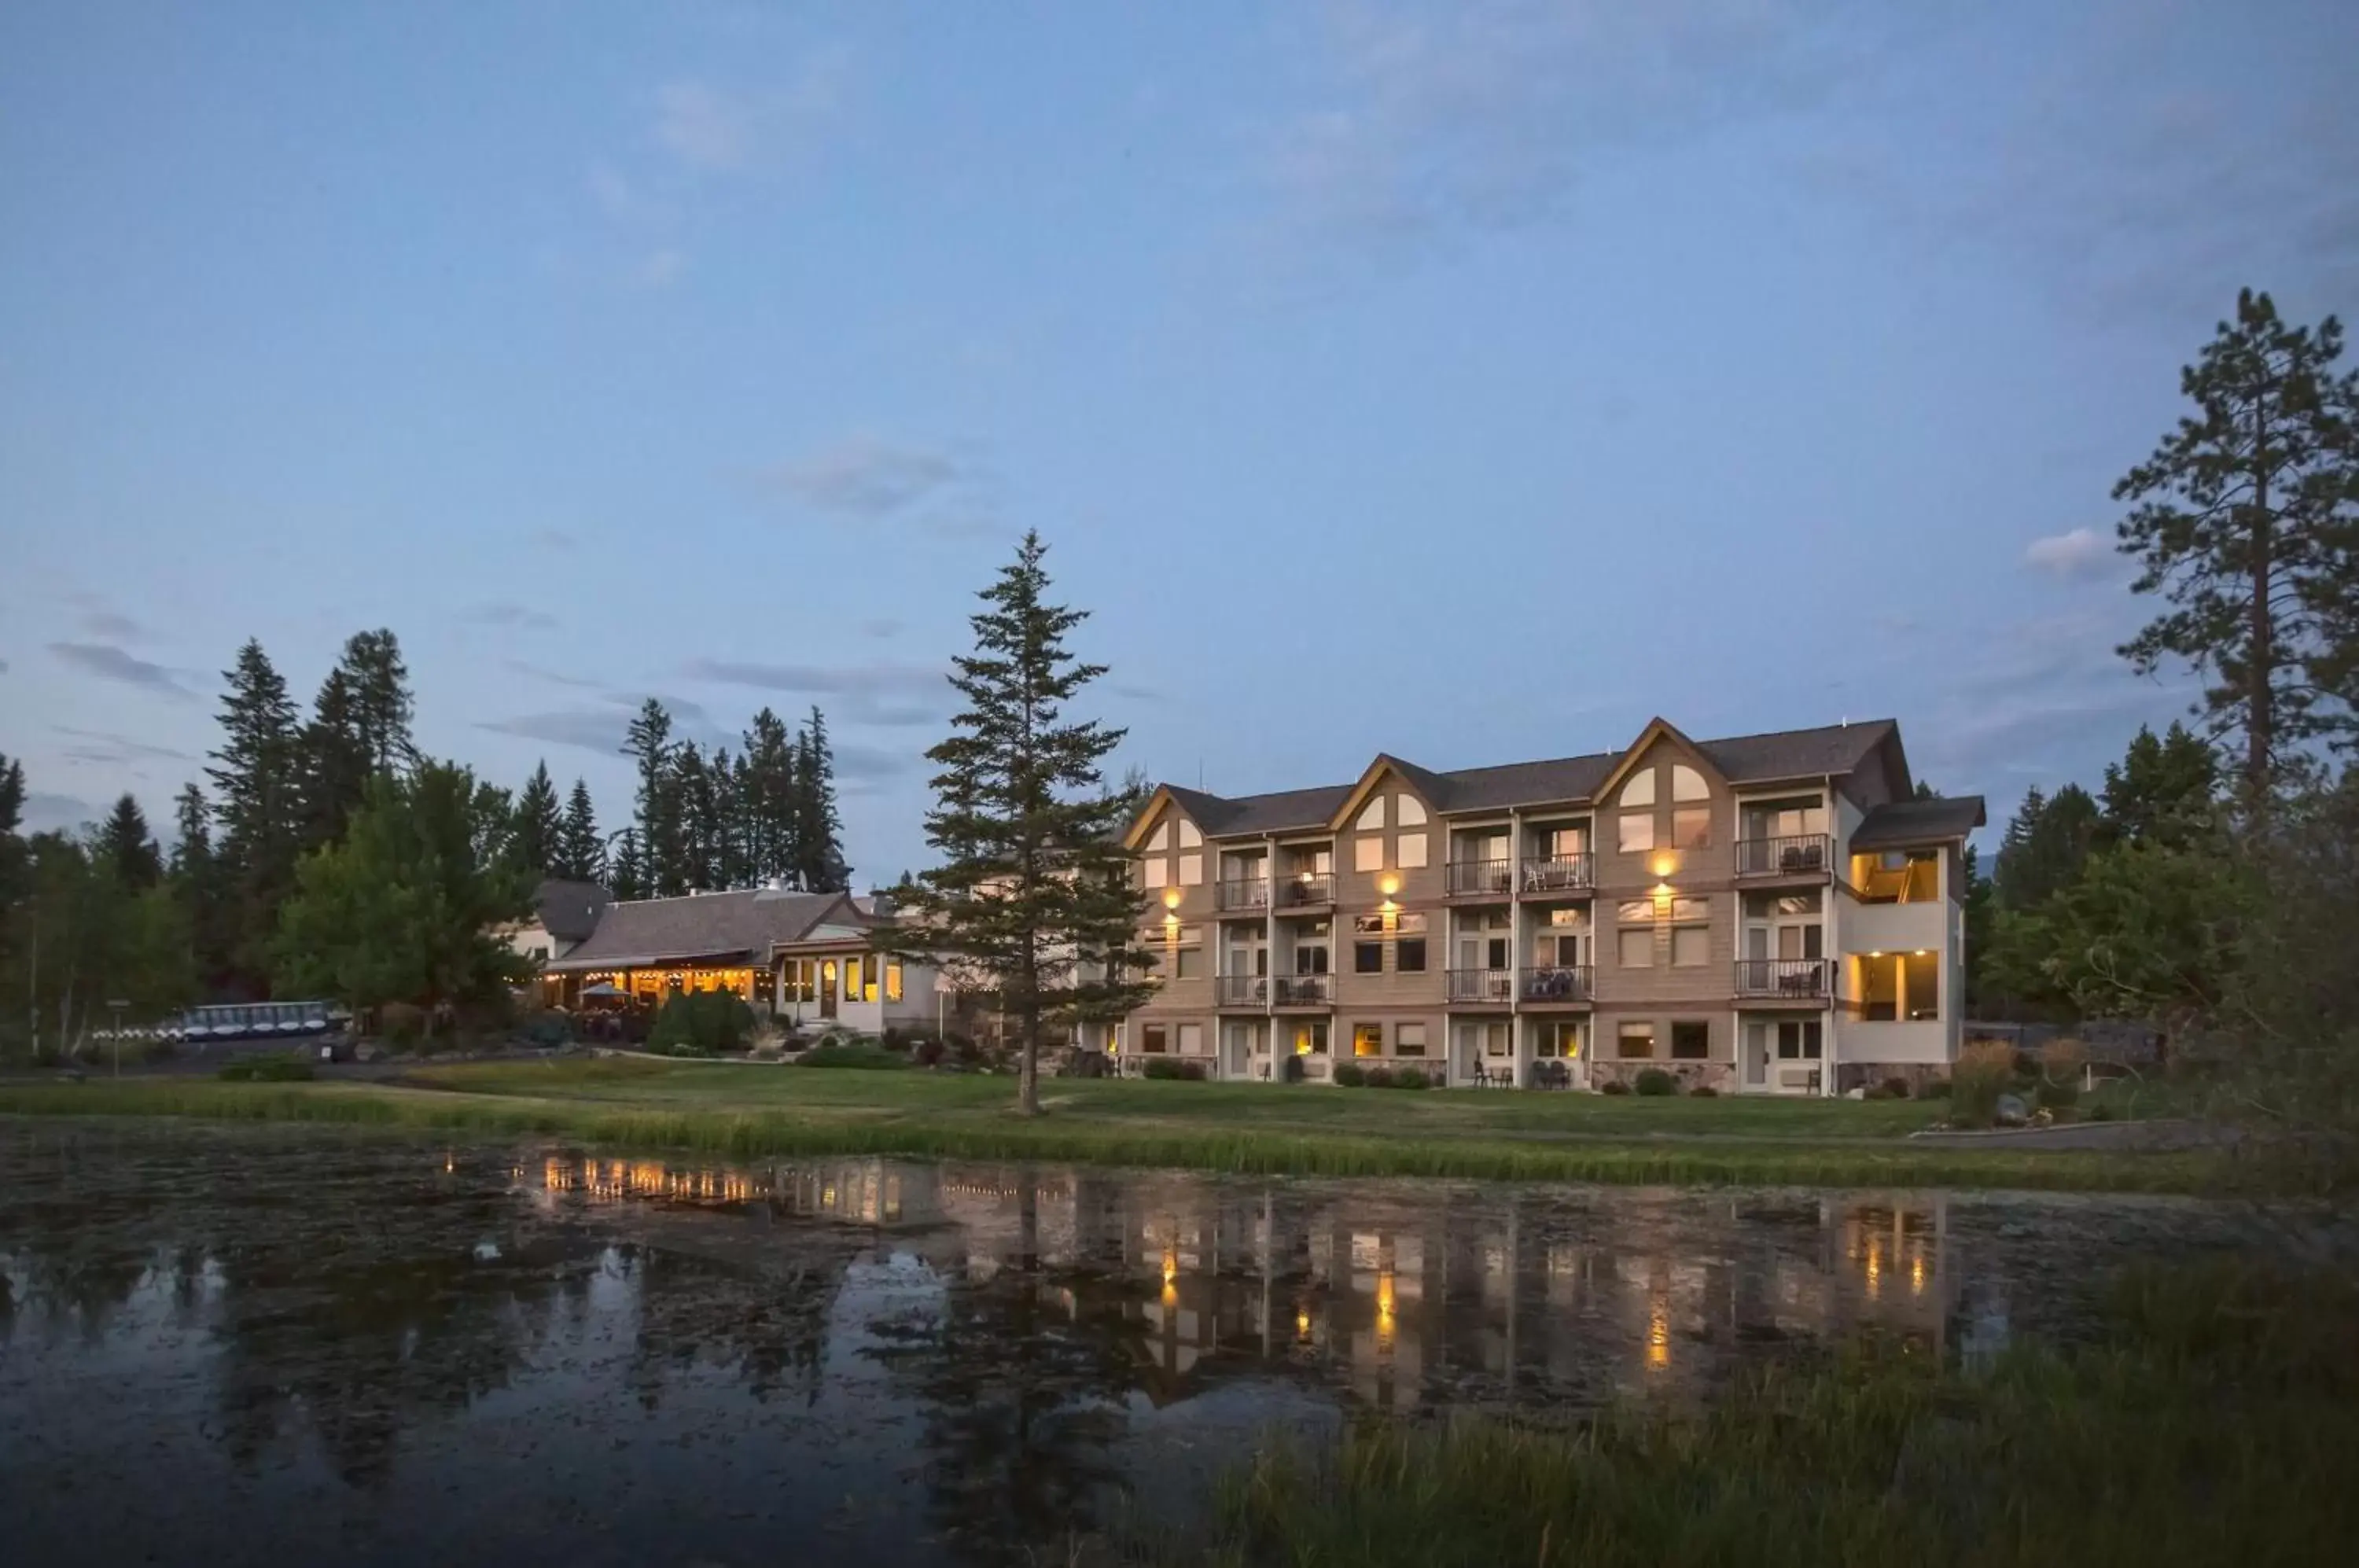 Property Building in Meadow Lake Resort & Condos